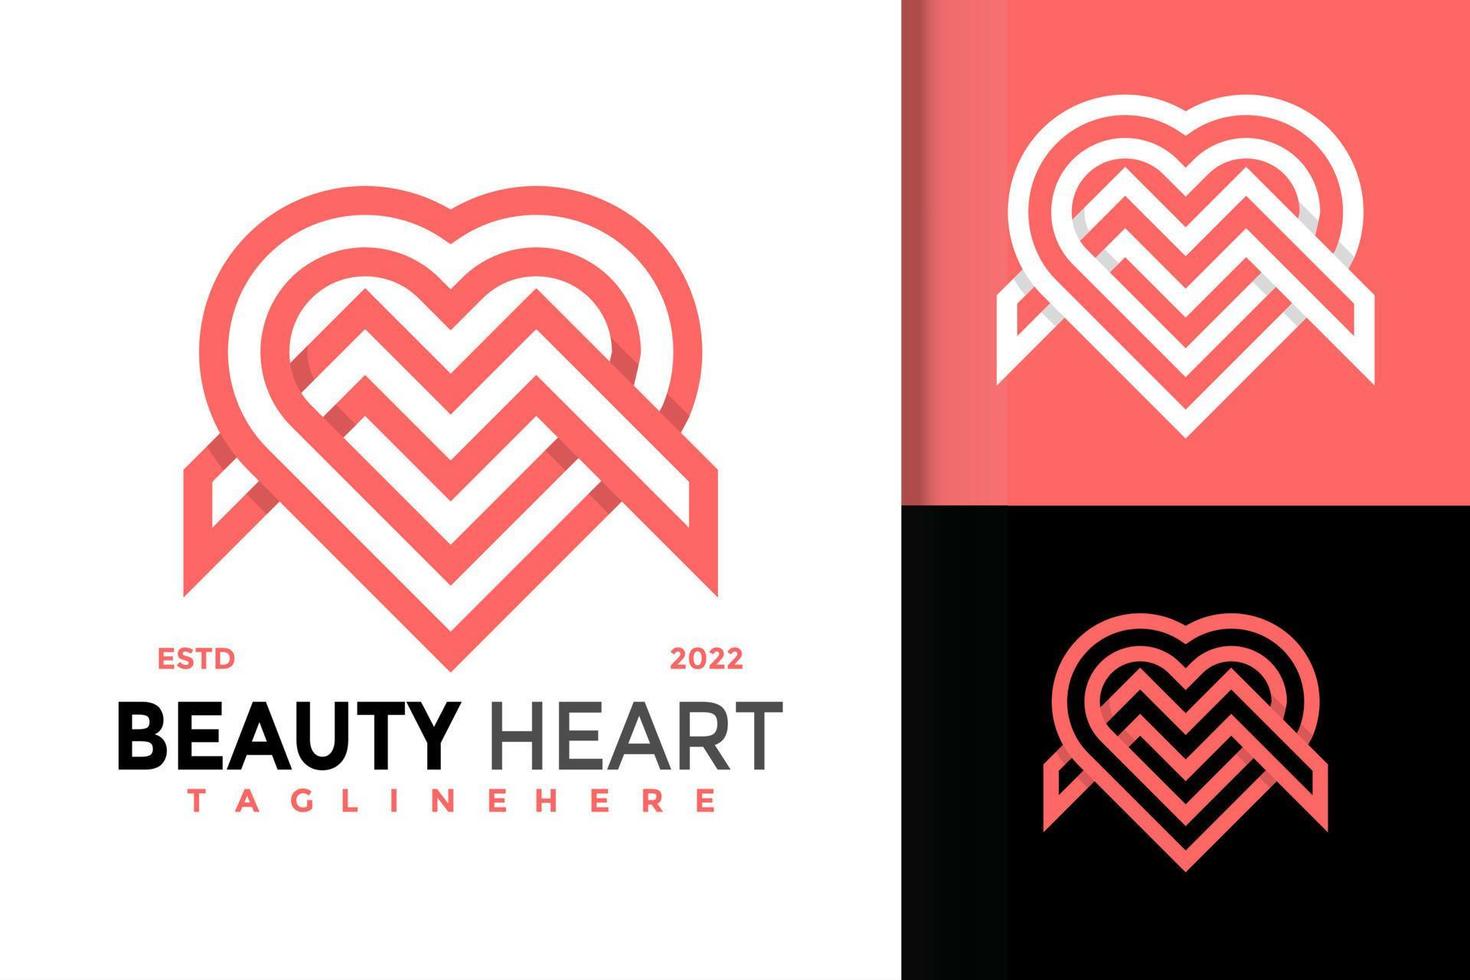 création de logo lettre m beauté coeur, vecteur de logos d'identité de marque, logo moderne, modèle d'illustration vectorielle de dessins de logo